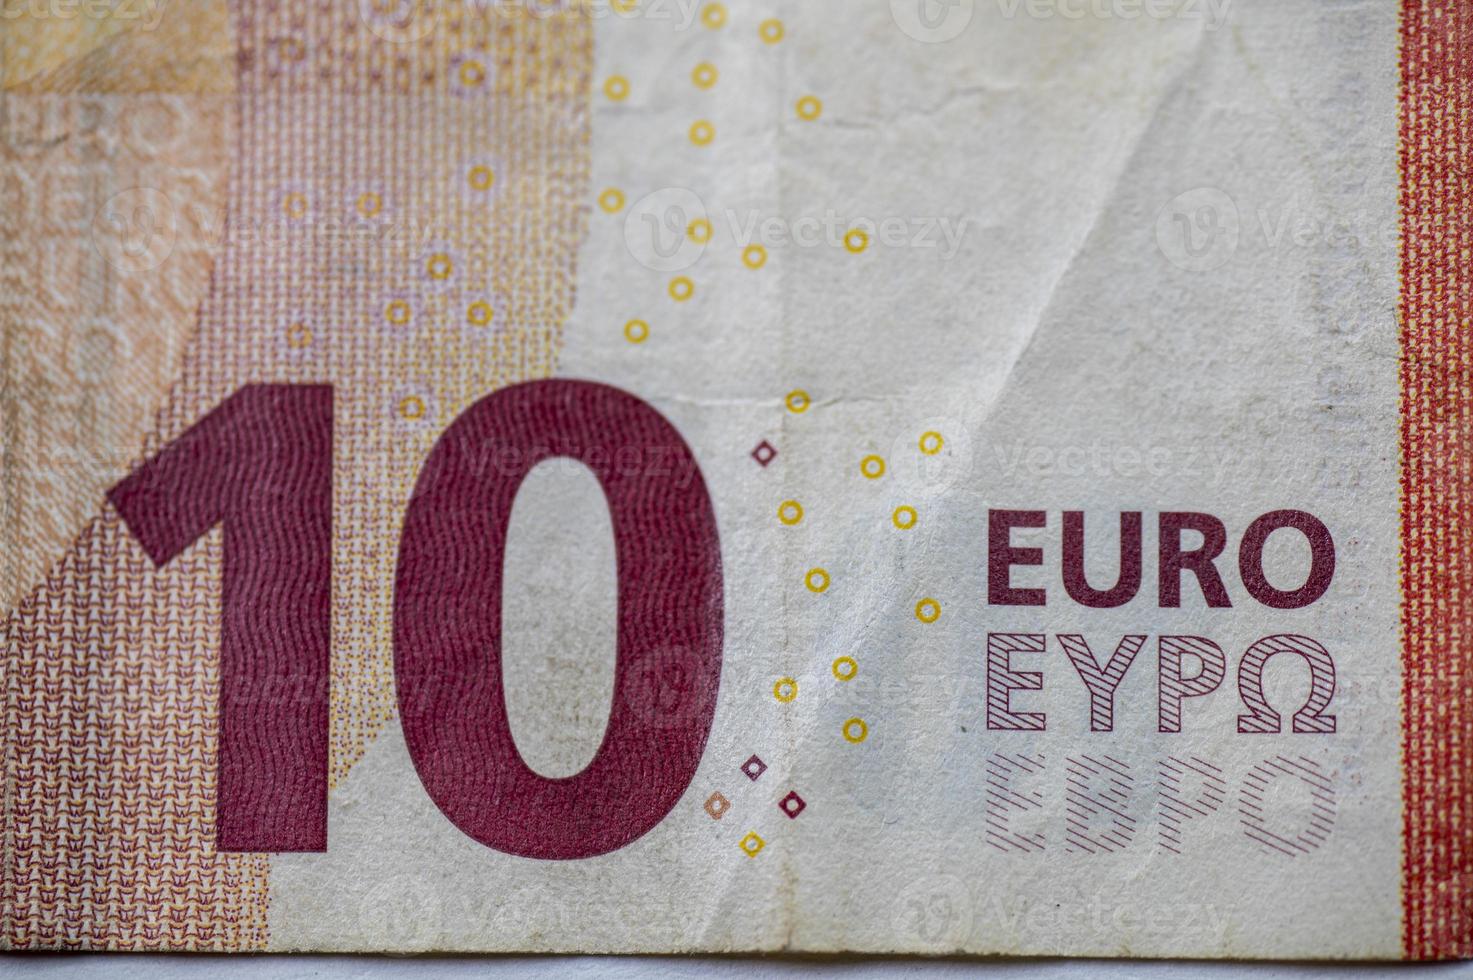 detalhe da nota de 10 euros foto